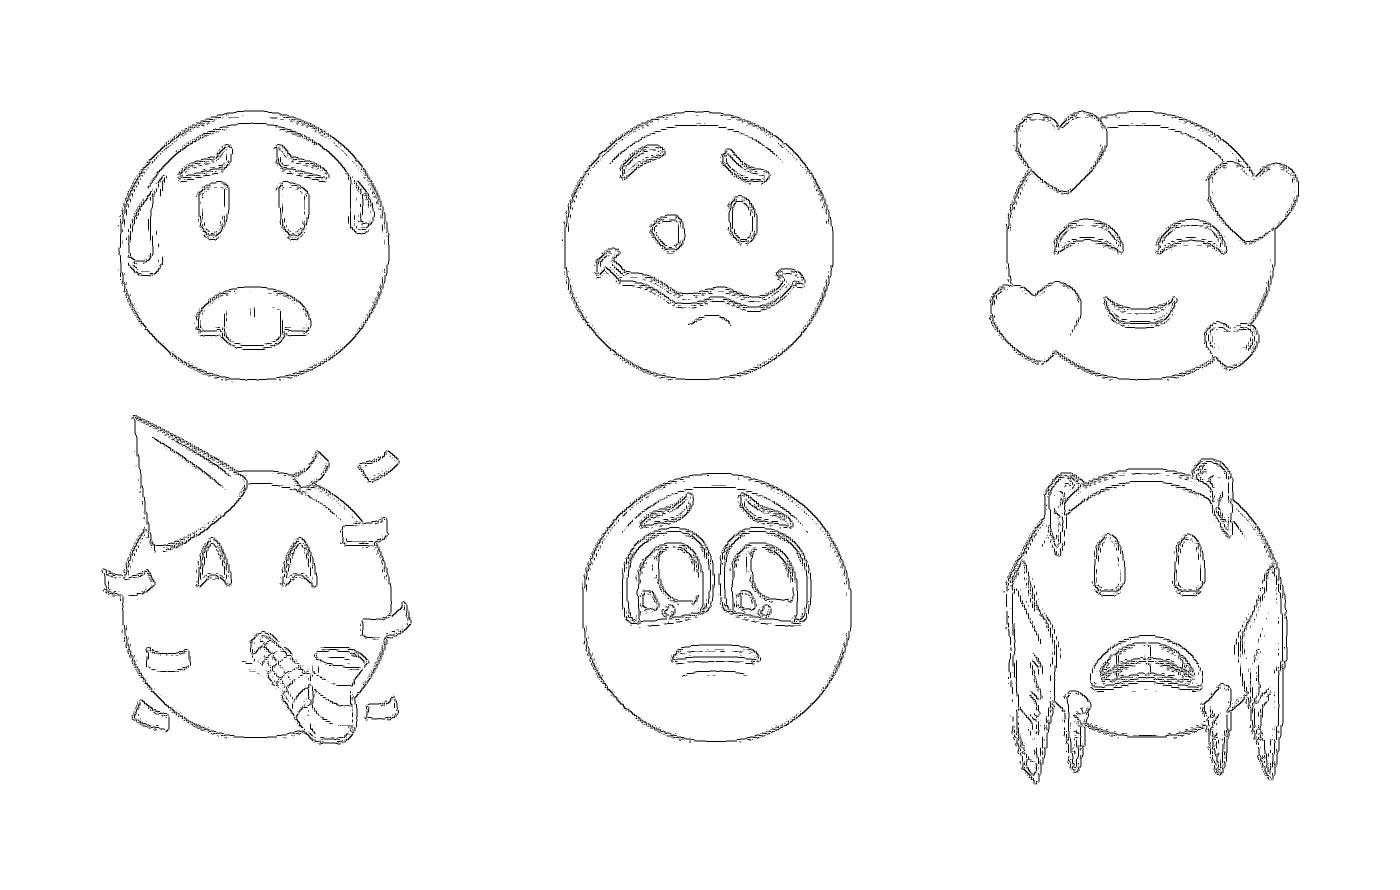  Eine Reihe von Zeichnungen verschiedener Gesichter mit unterschiedlichen Ausdrücken 